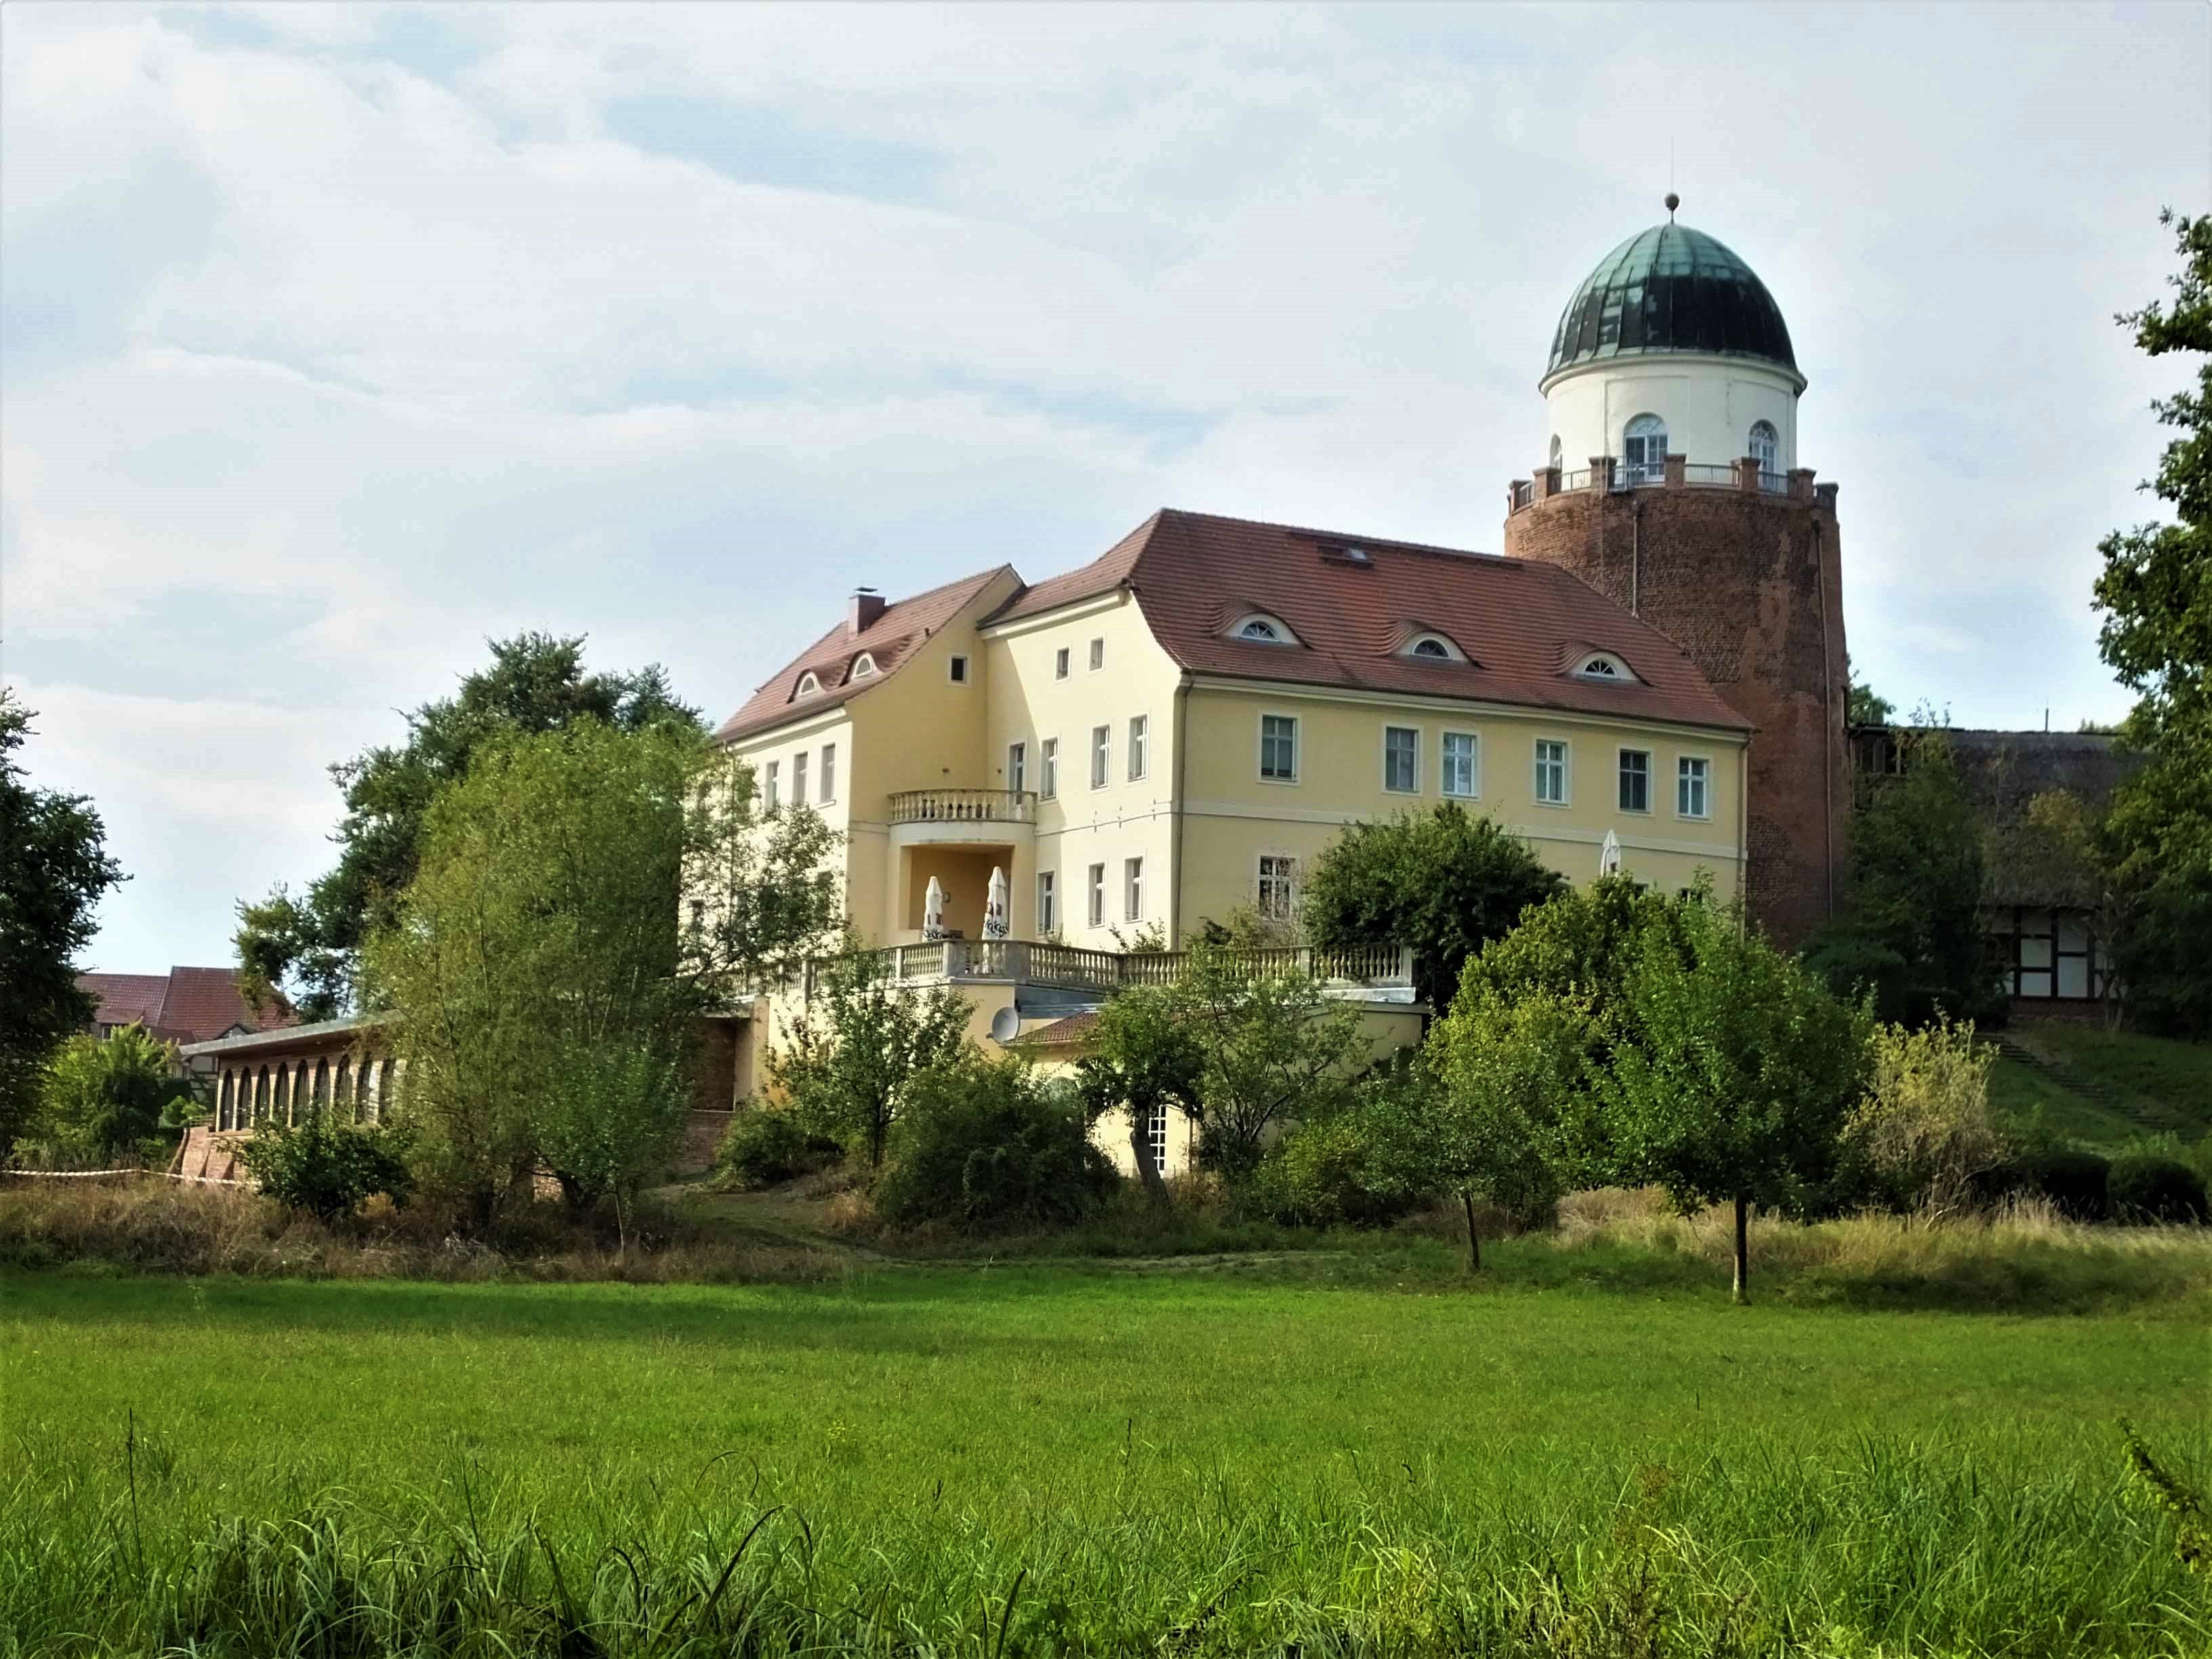 Die mittelalterliche Burg Lenzen an der Elbe ist heute BUND Besucherzentrum und BioHotel mit vielfältigen Angeboten auch für Reisegruppen. Neu: der Auenwald mit Baumhängebrücke und fest installierten Fernrohren.